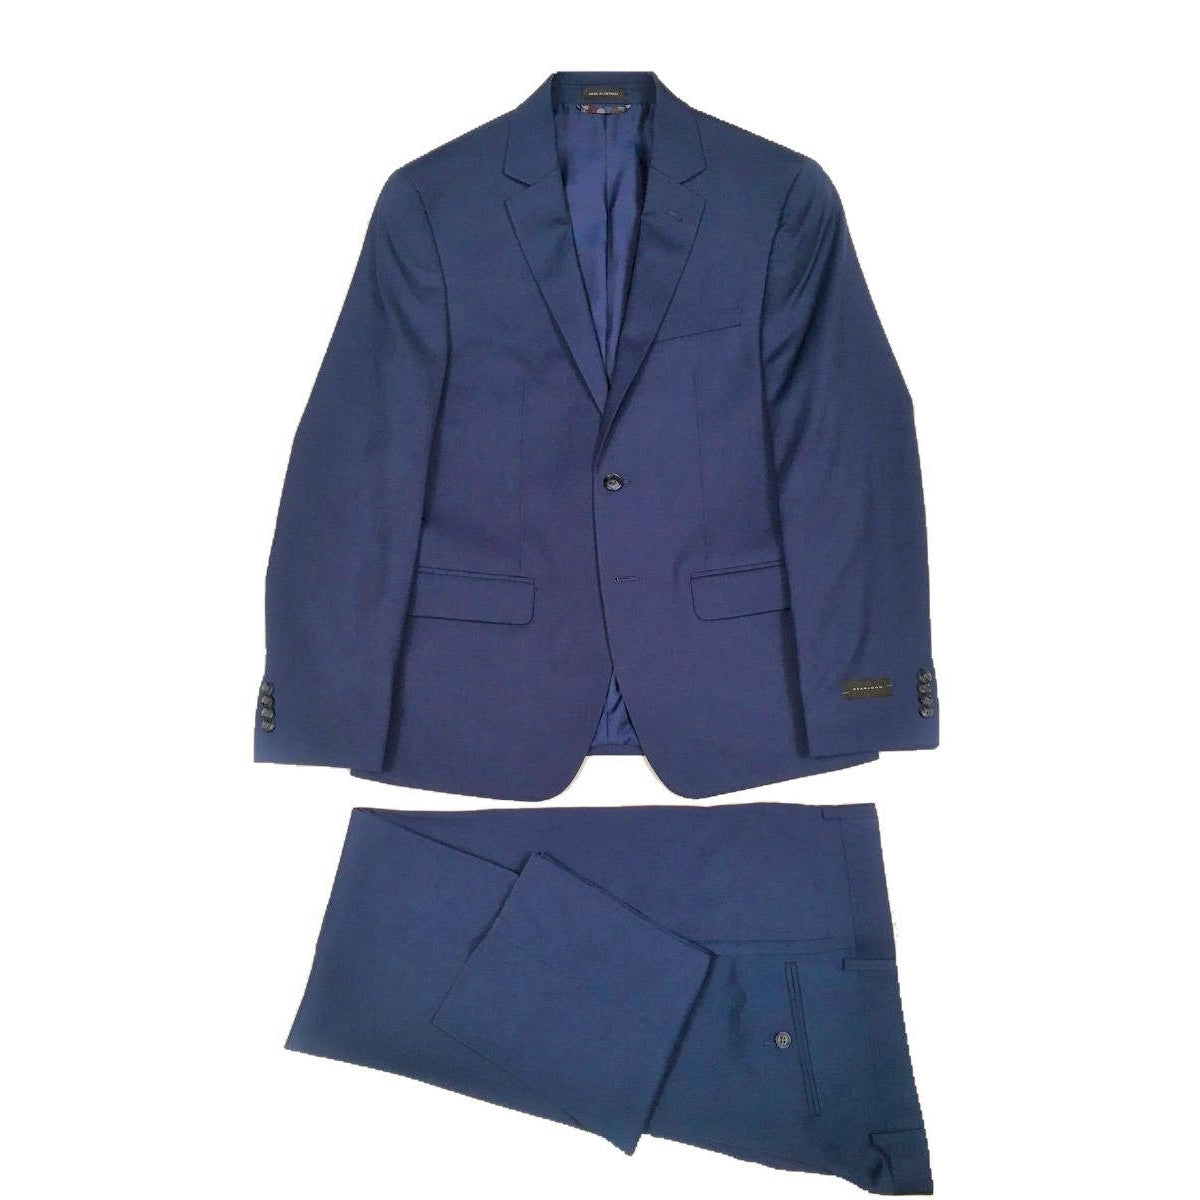 Sean John Mens Extreme Slim Fit Light Blue Suit Z1353